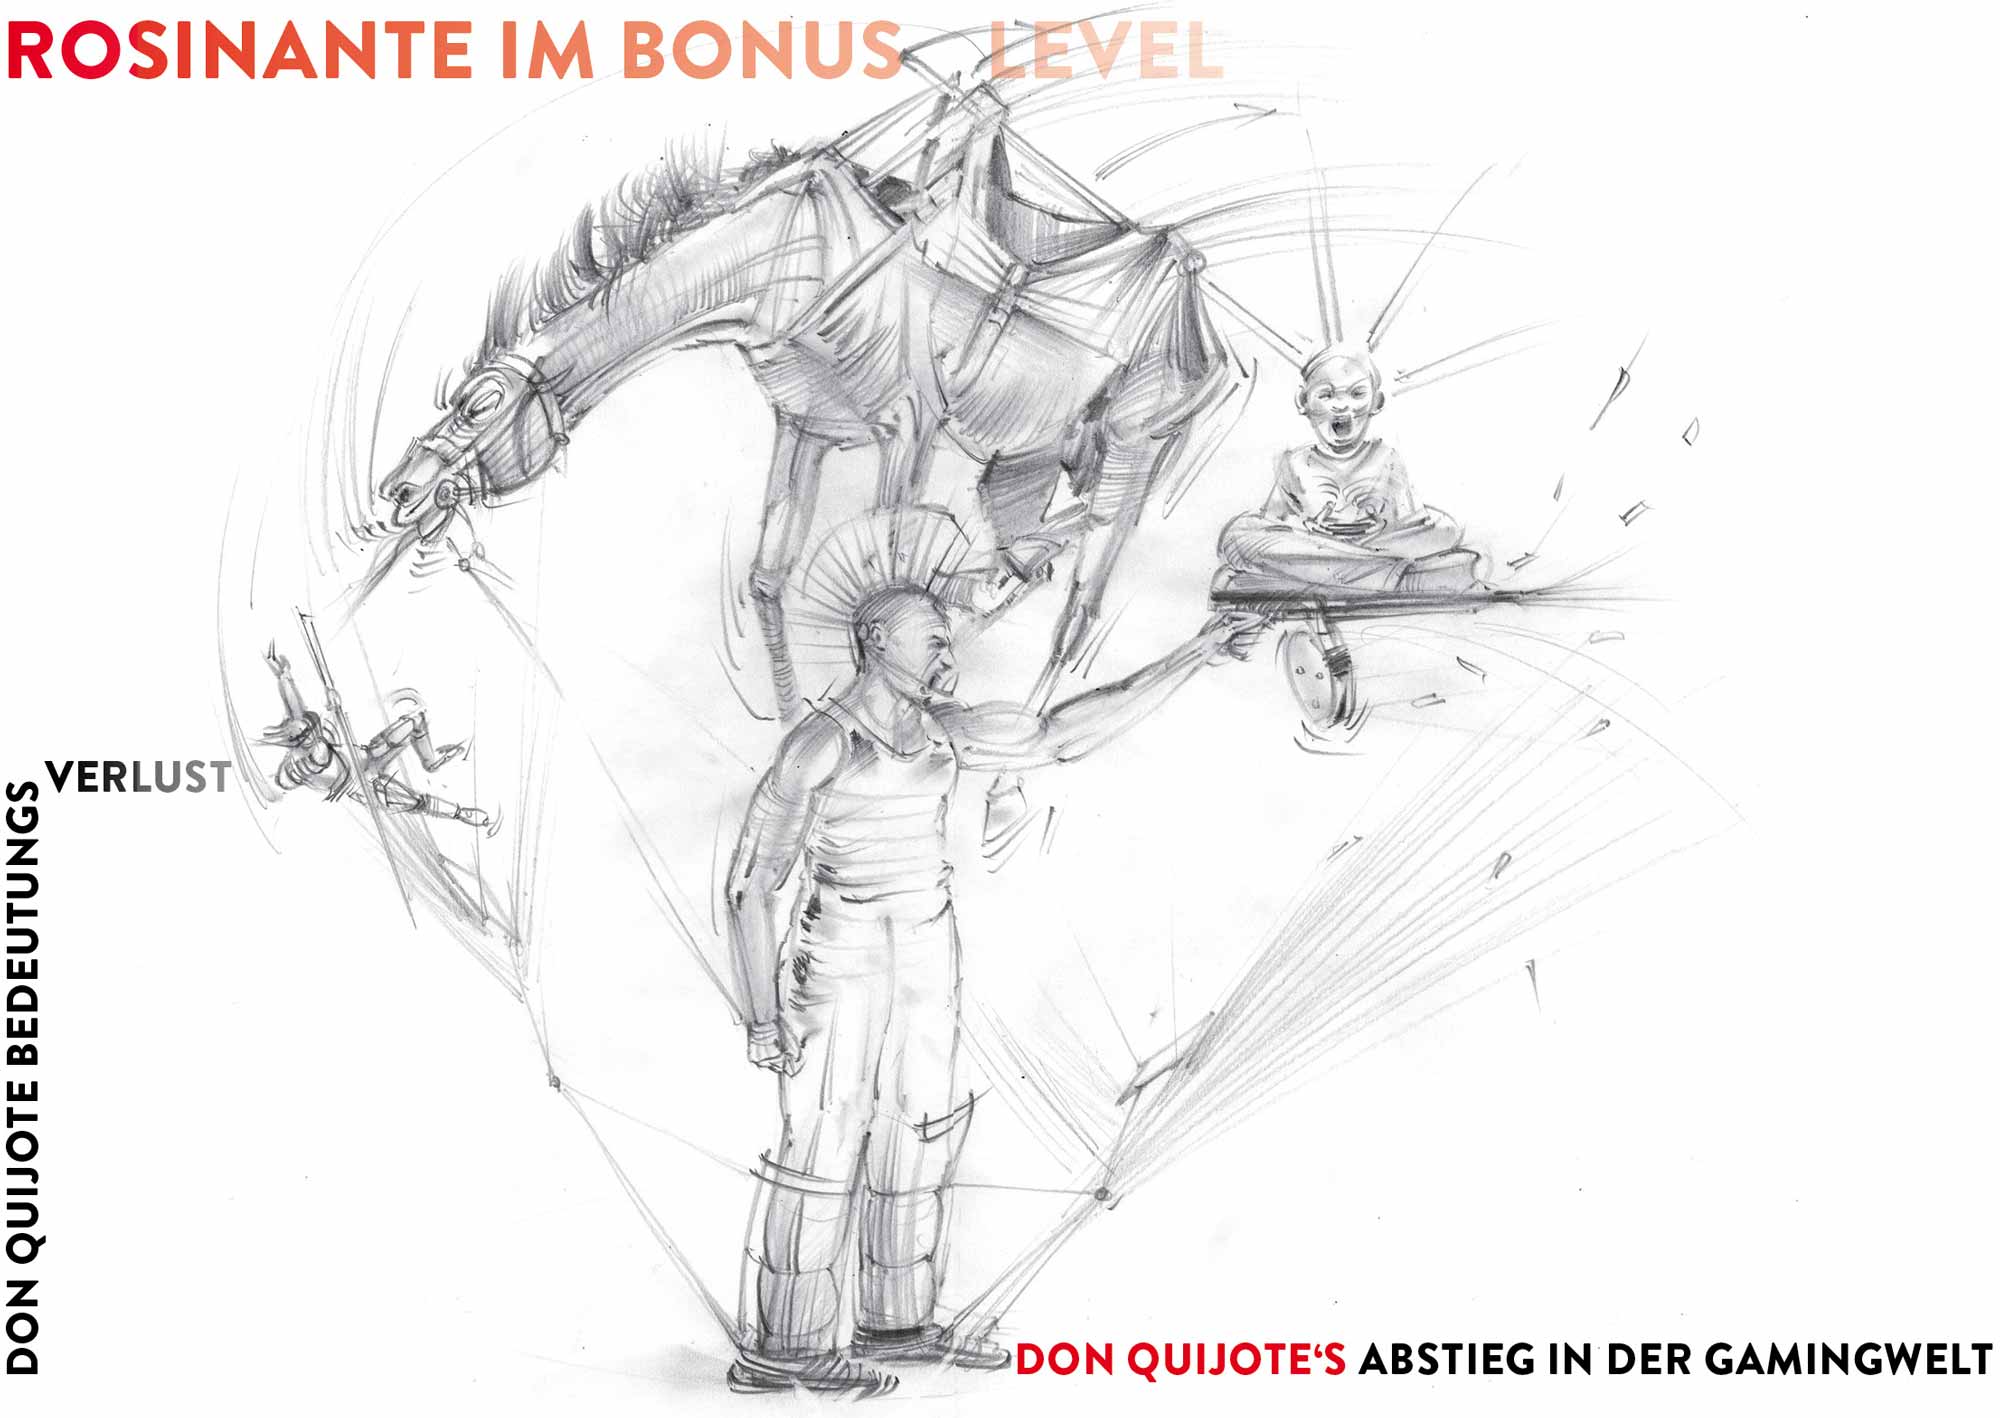 Don Quijote und Rosinante Bedeutungsverlust